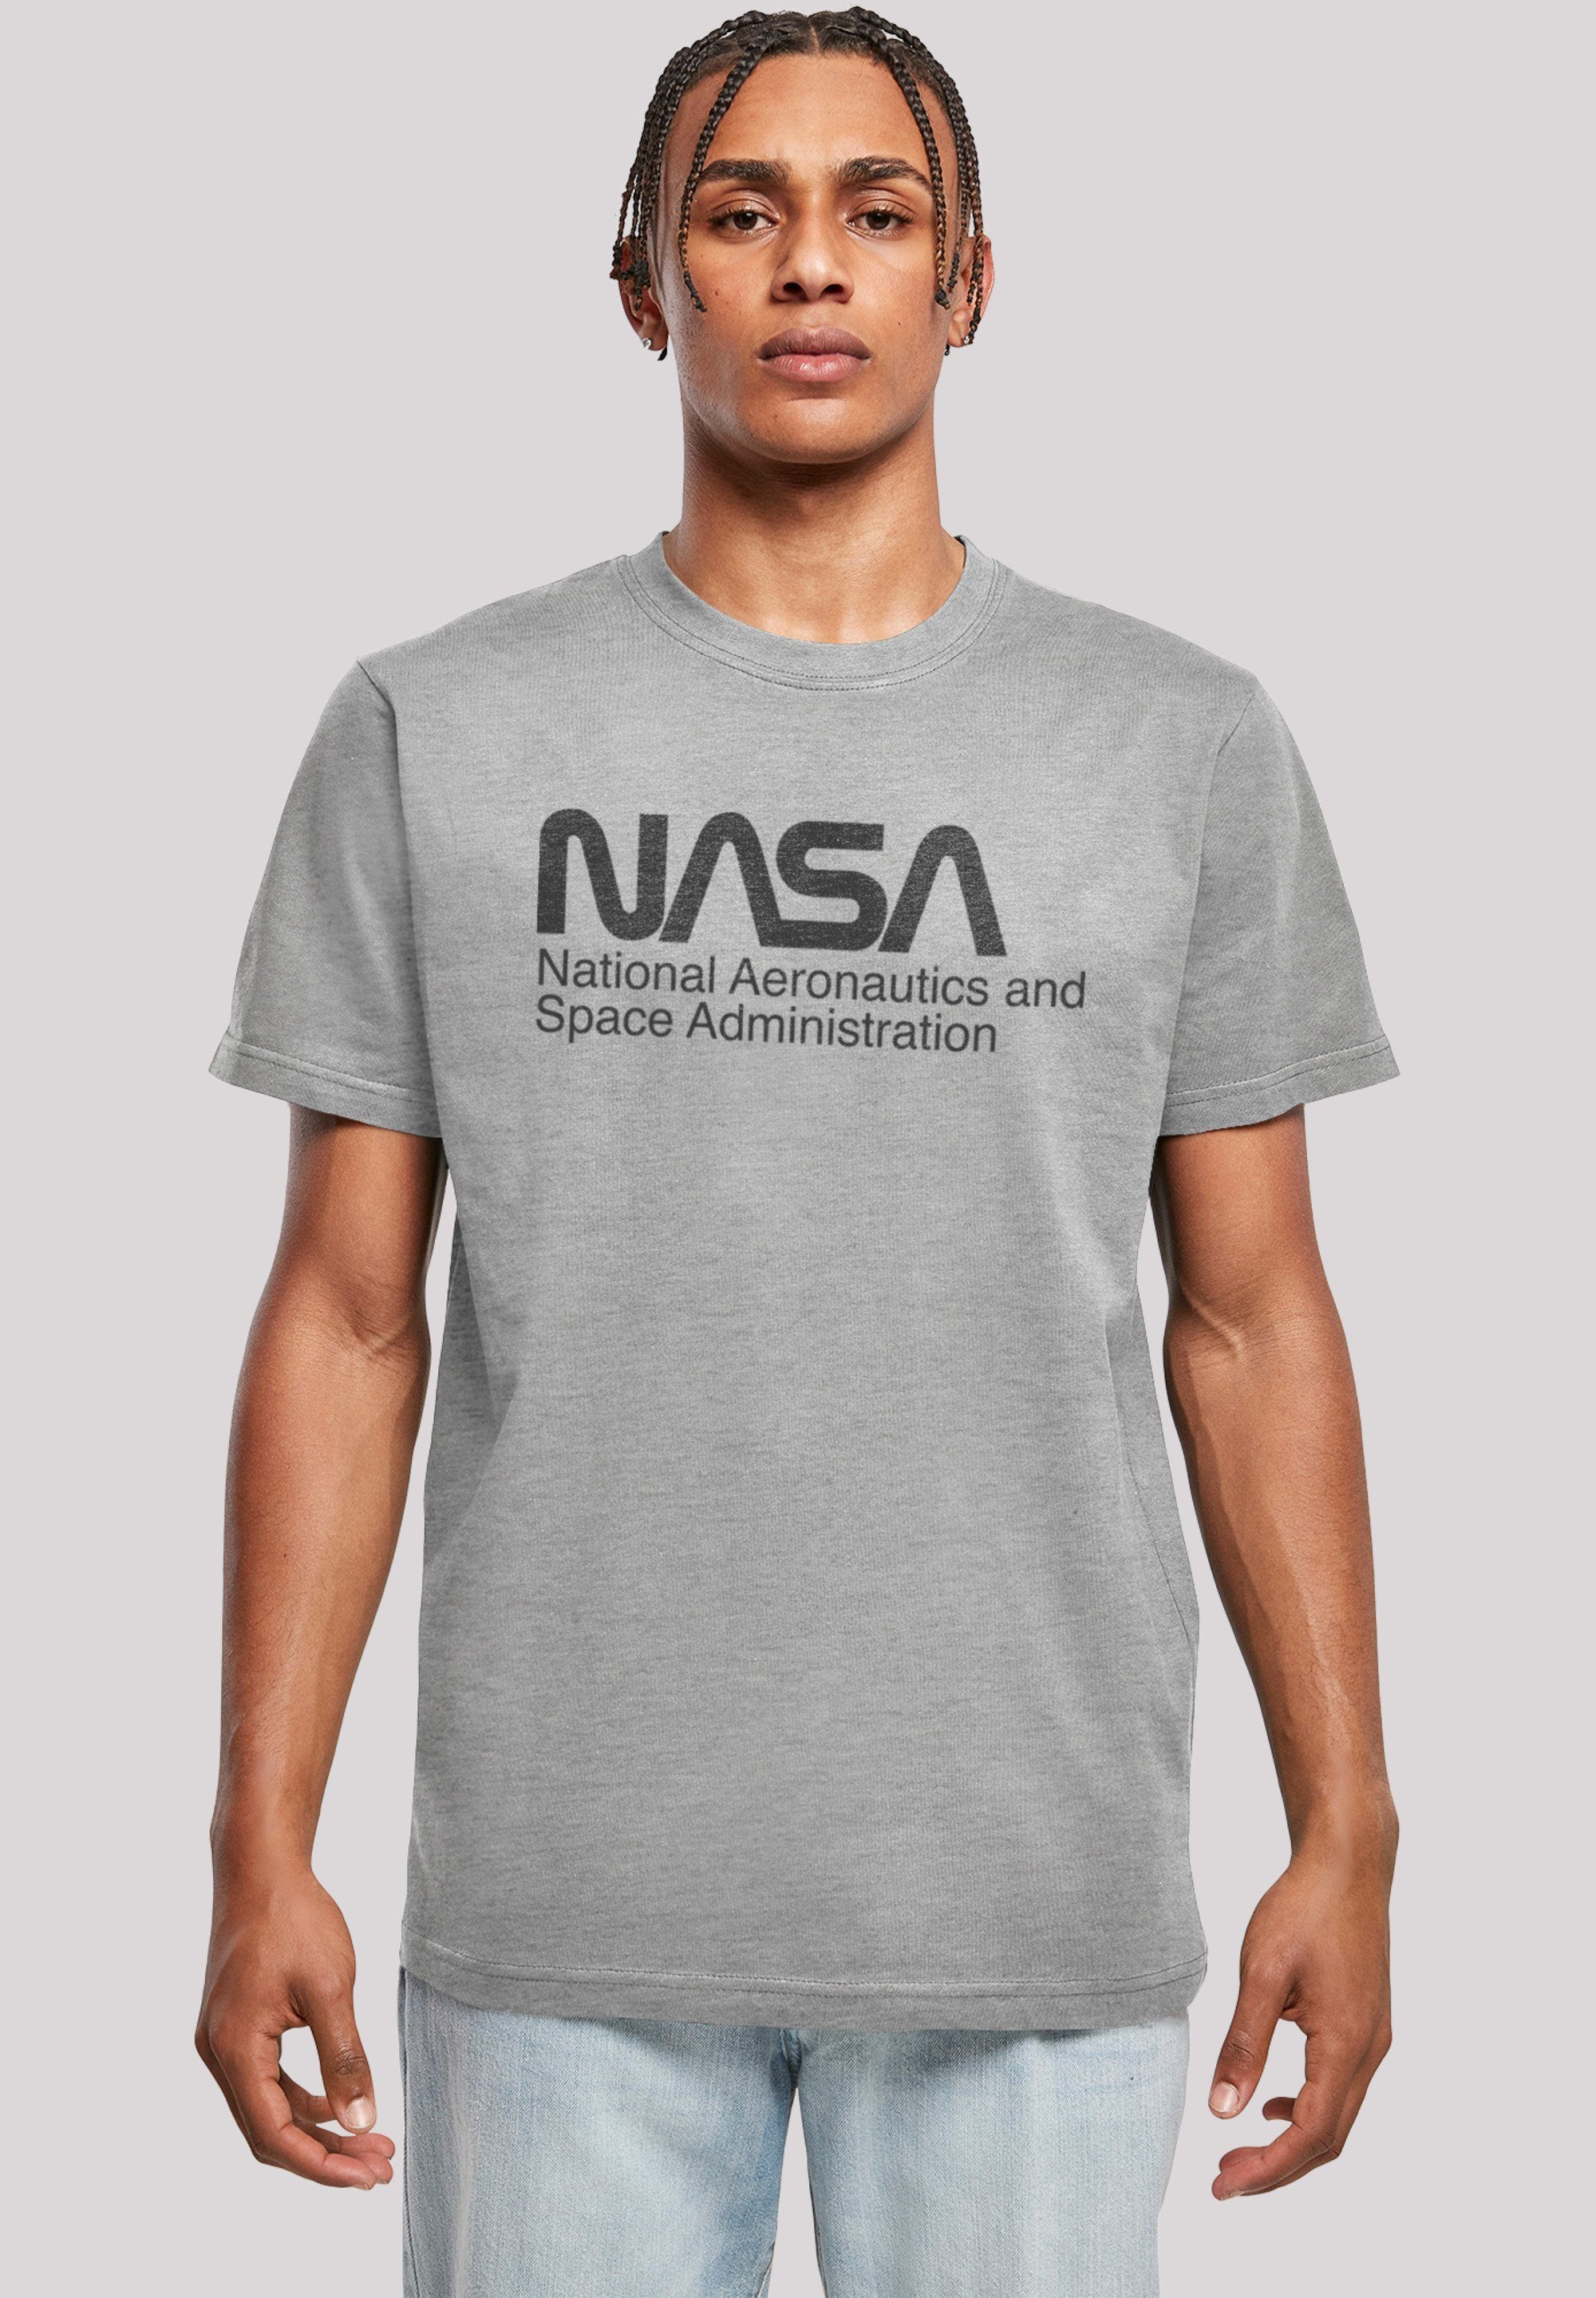 Print, Logo Baumwollstoff F4NT4STIC One weicher Sehr T-Shirt NASA Tone Tragekomfort hohem mit